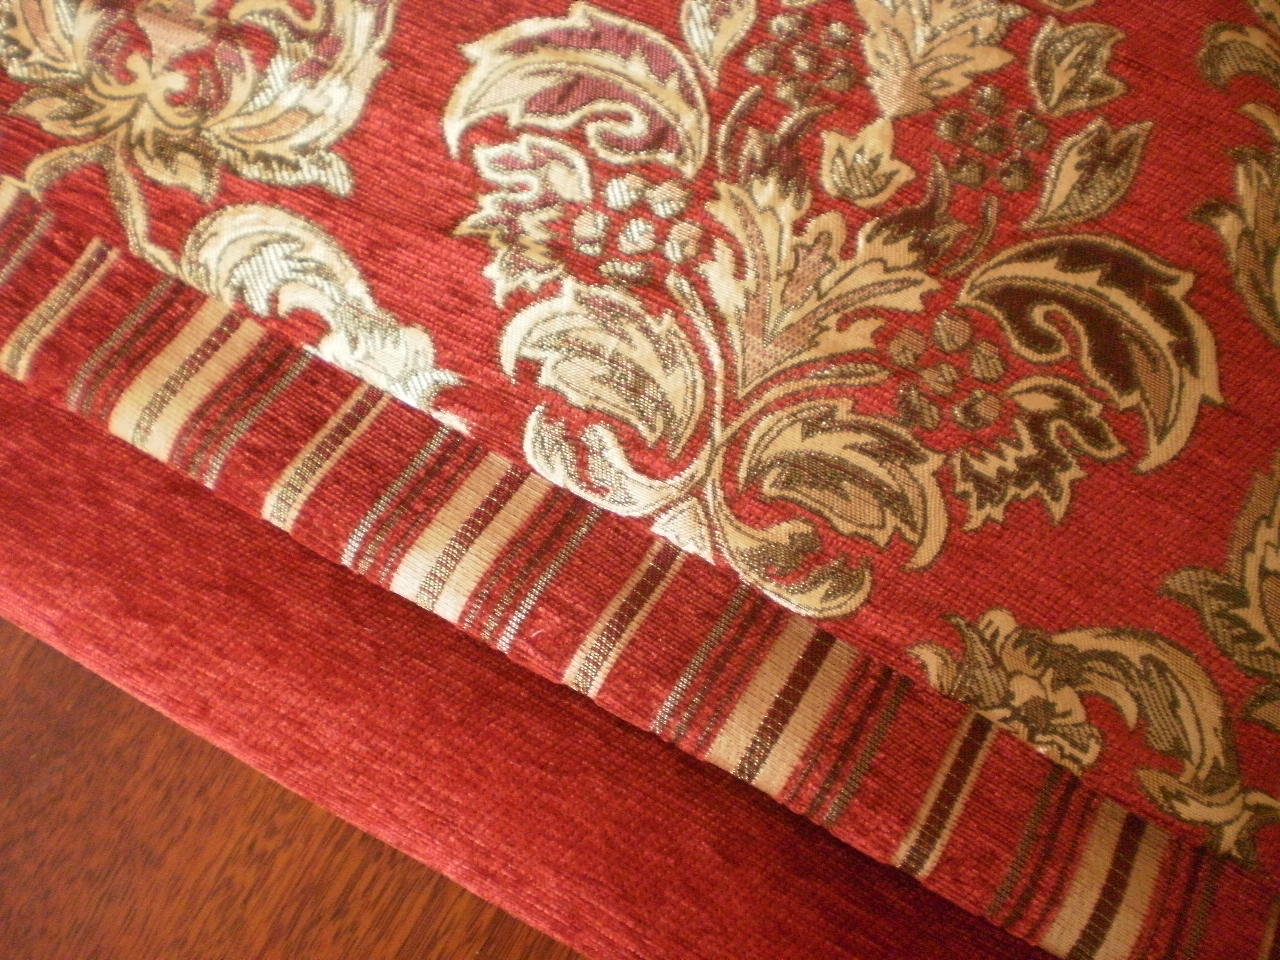 高档欧式沙发布料 雪尼尔沙发面料 定做沙发套沙发垫红色包邮